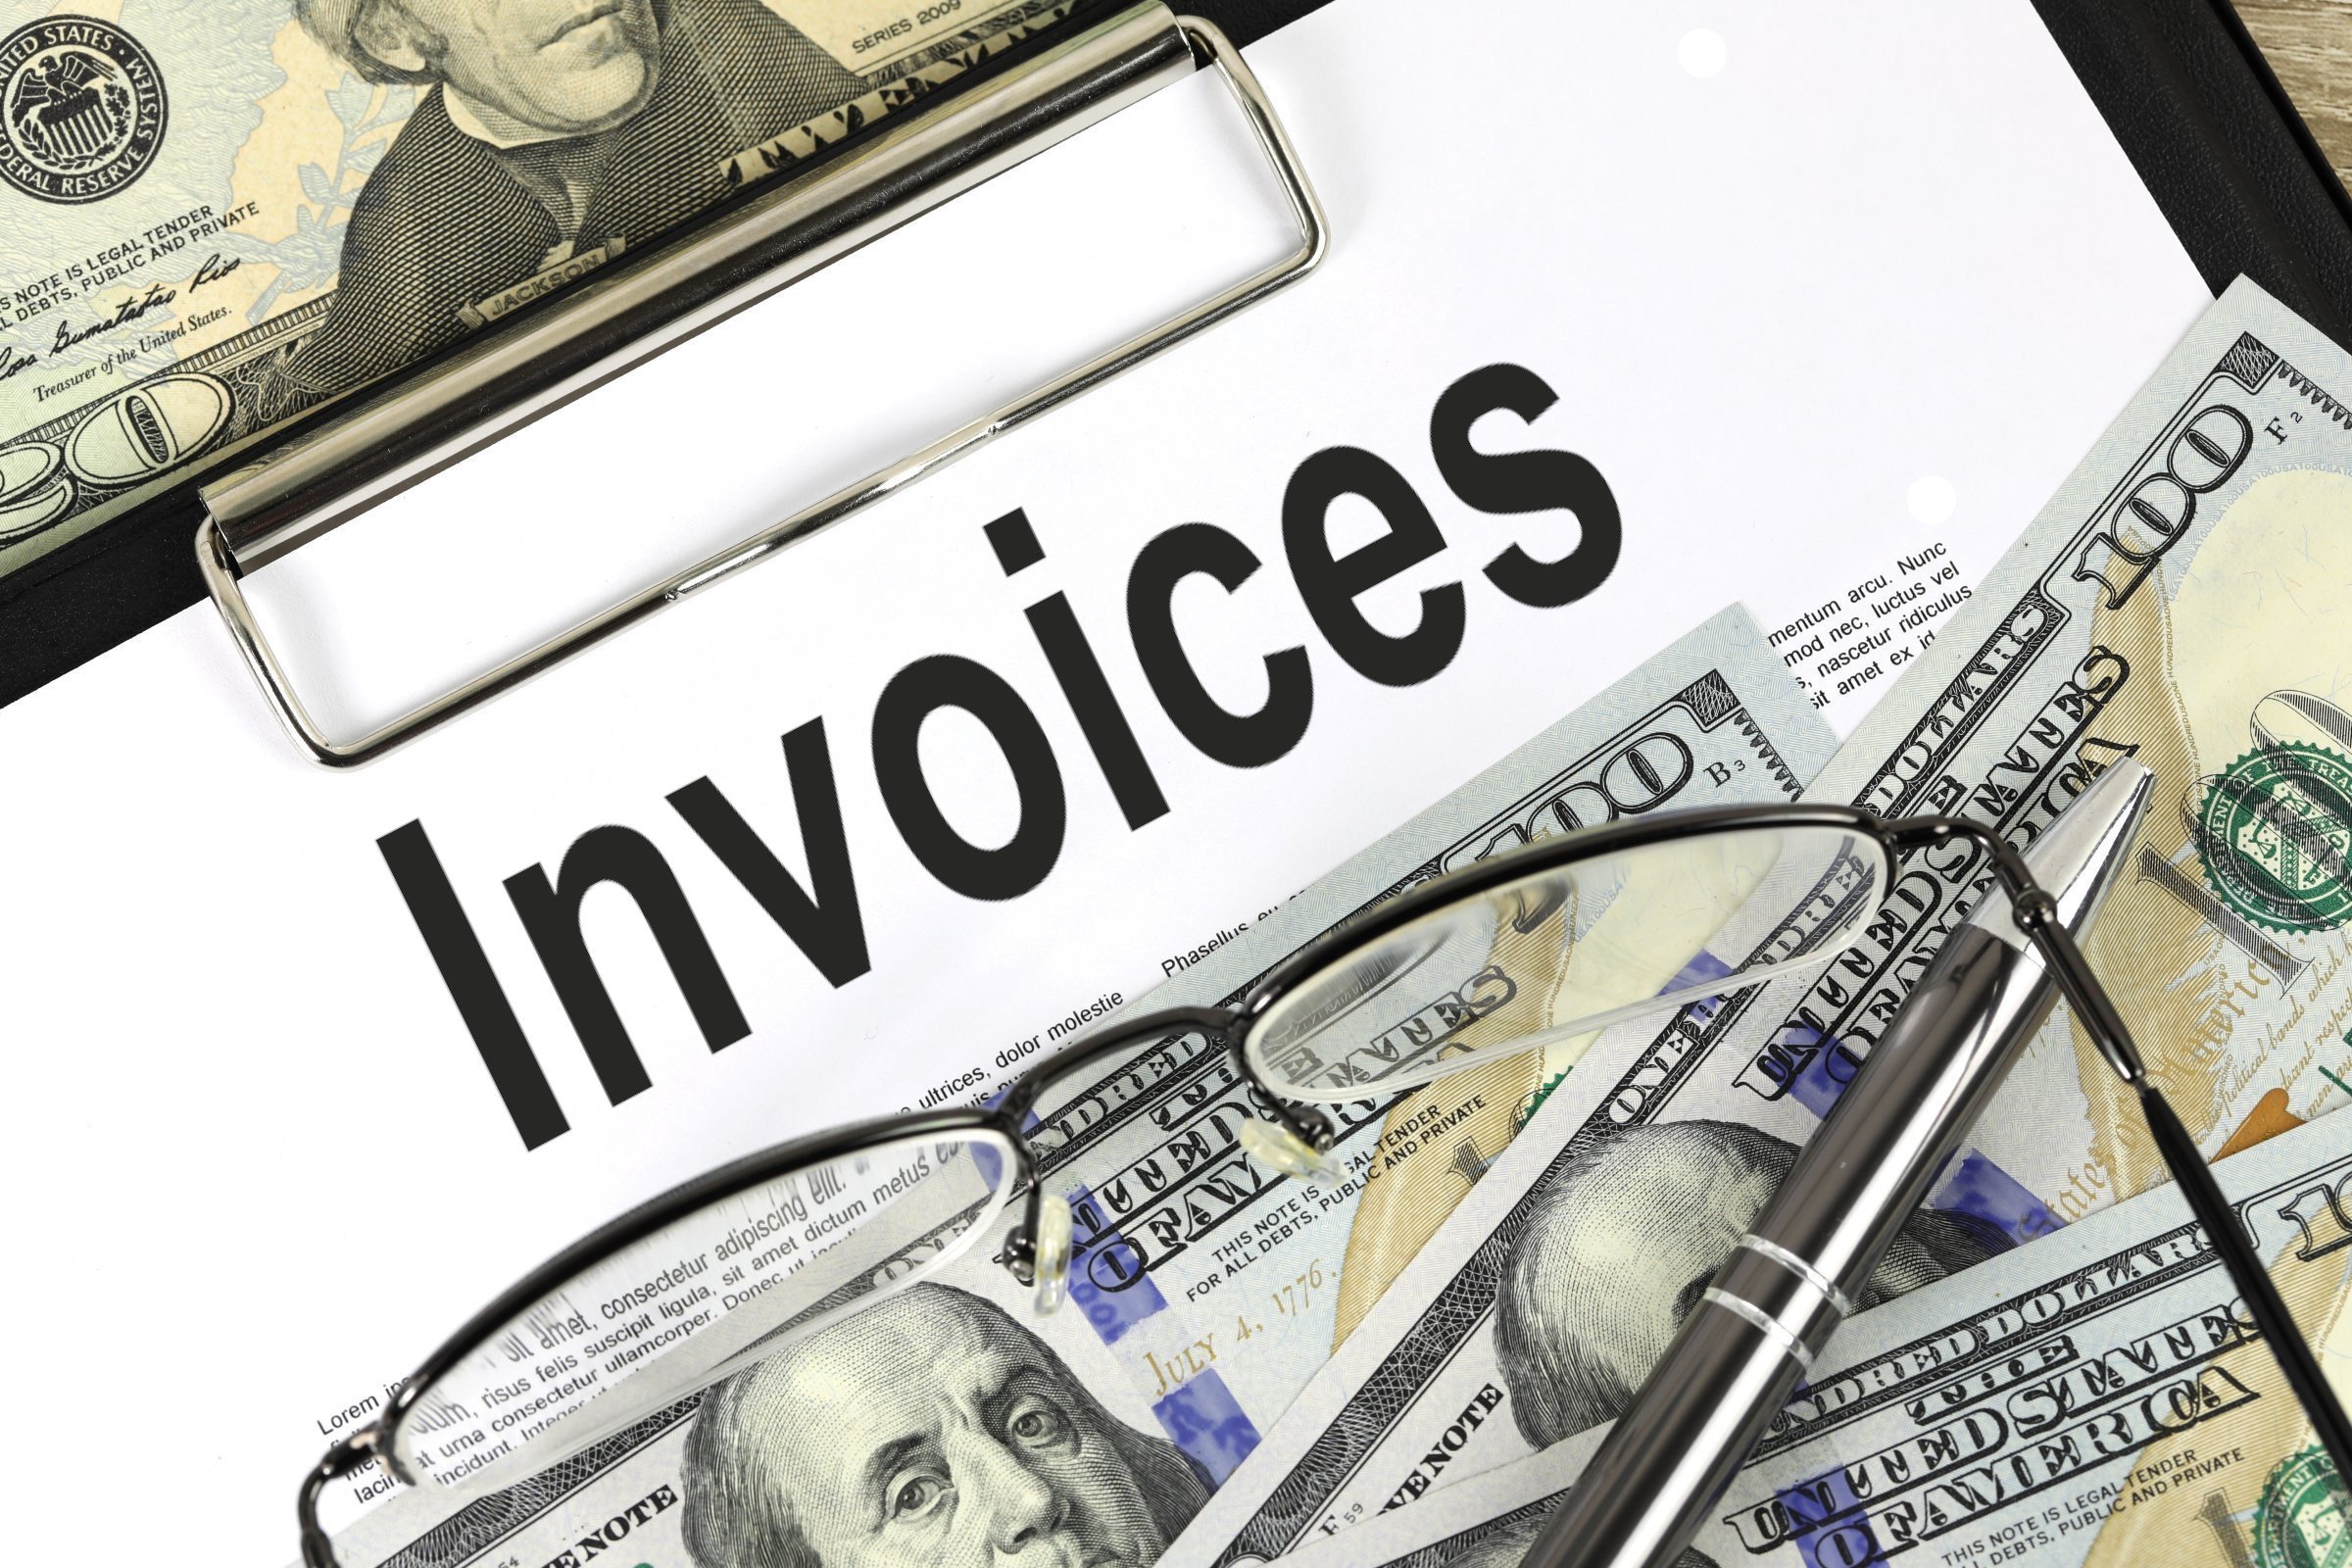 invoices